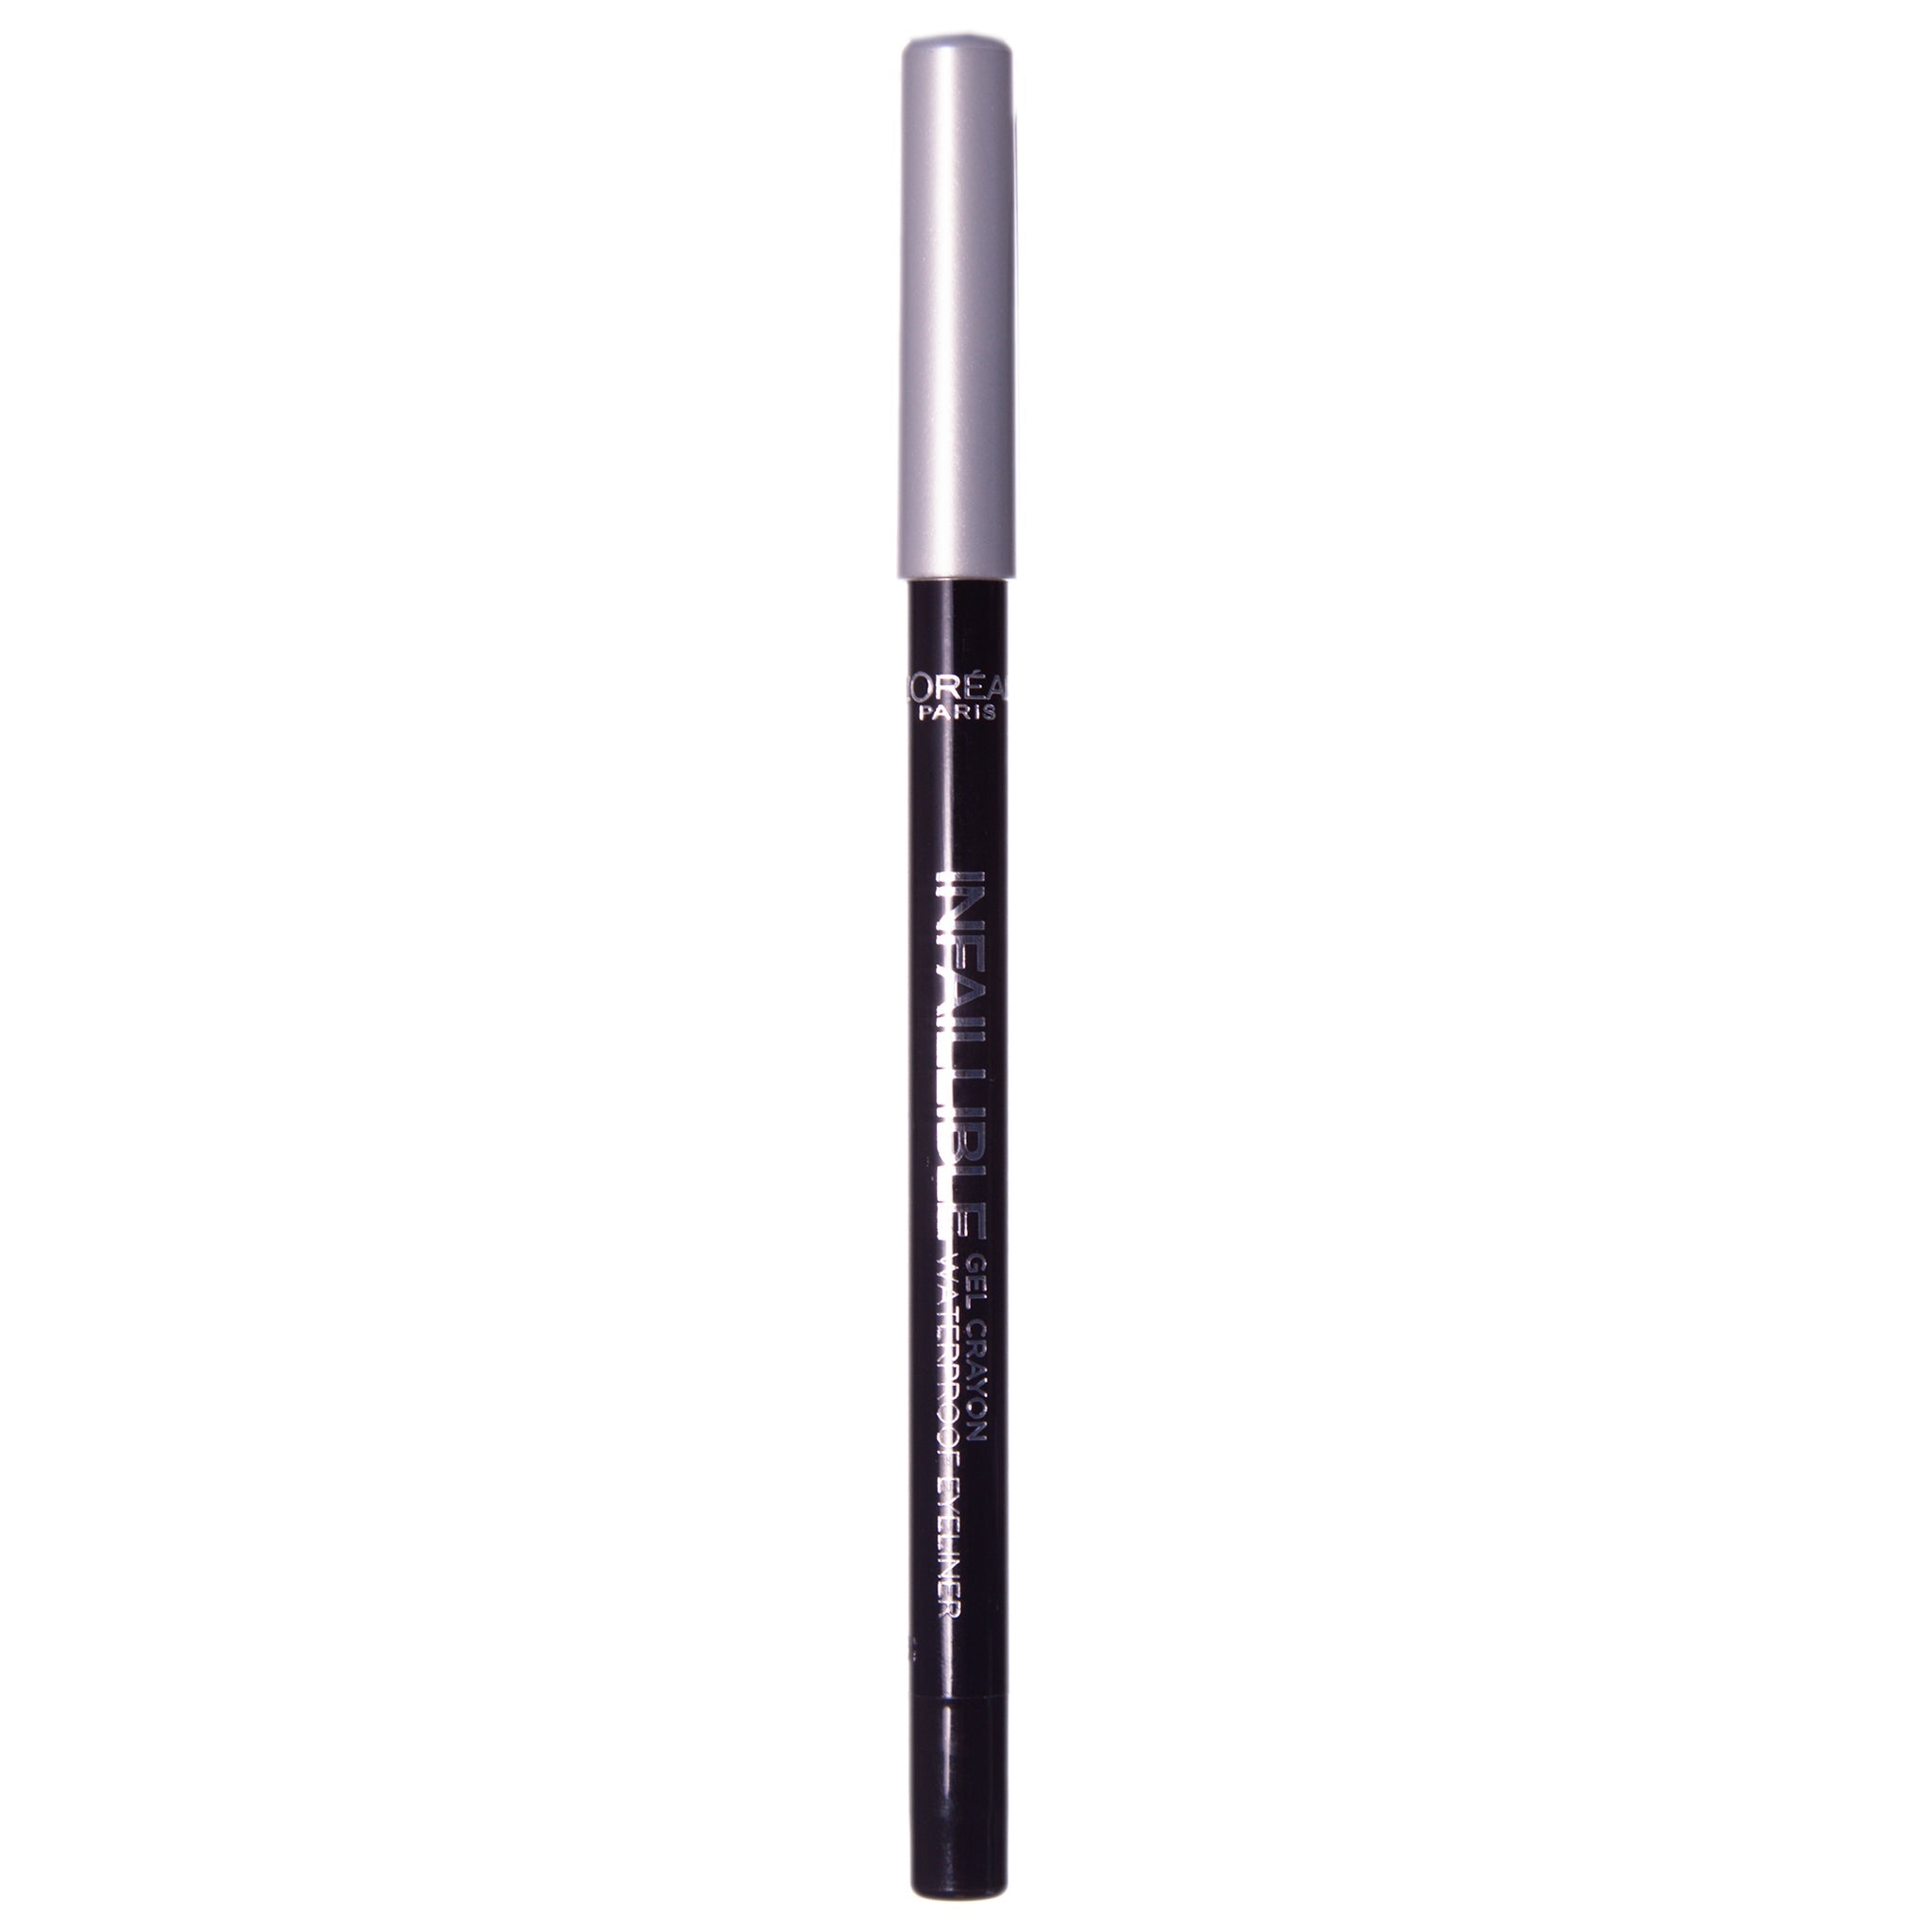 L'Oreal Infallible Gel Crayon Waterproof Eyeliner - 07 Flash Silver